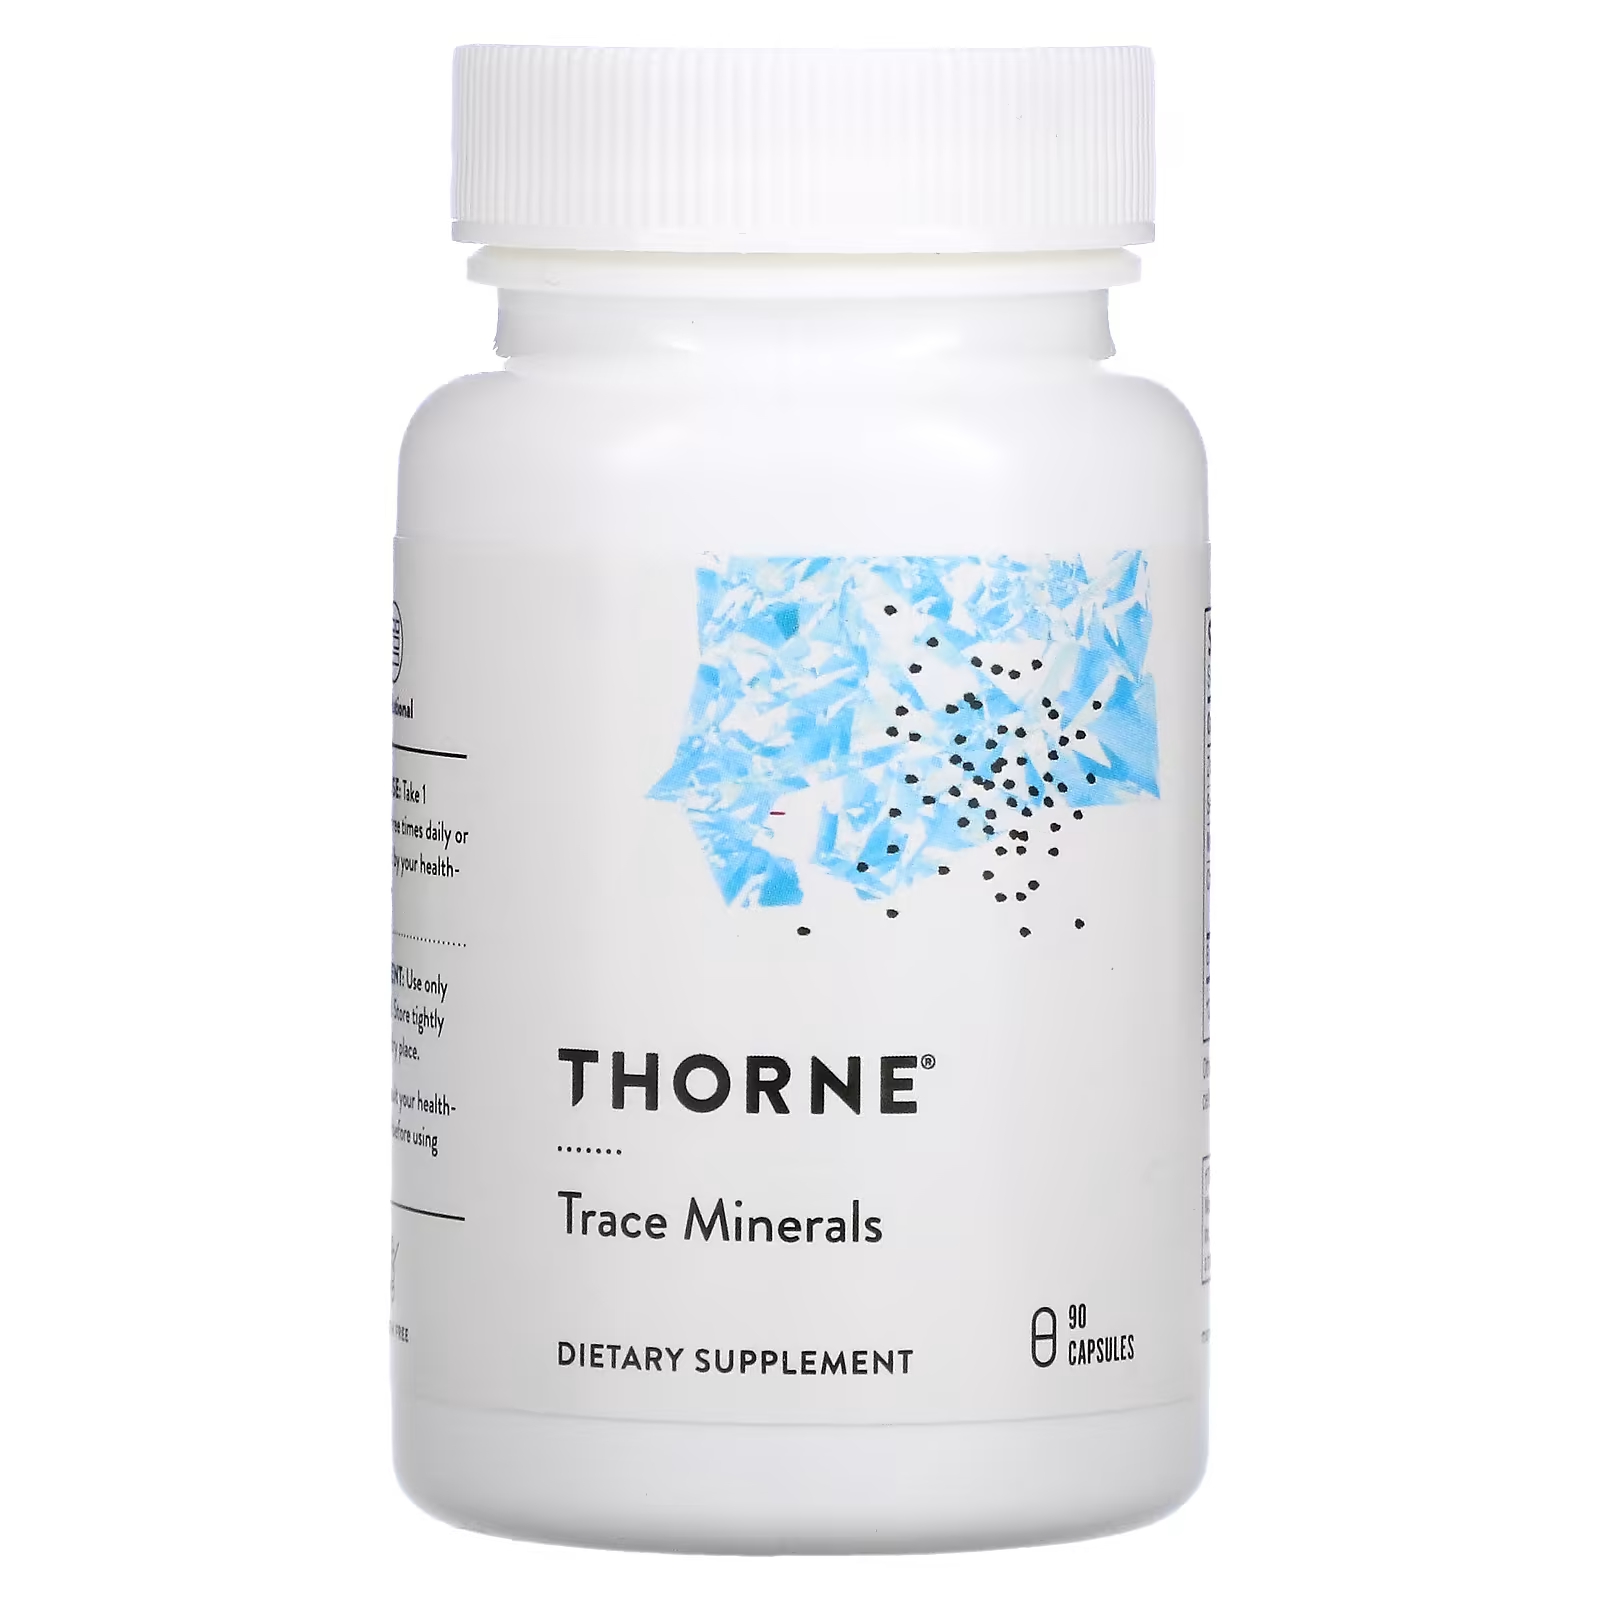 Пищевая добавка Thorne Trace Minerals без глютена, 90 капсул комплексная пищевая добавка 30г красители пищевые сухие